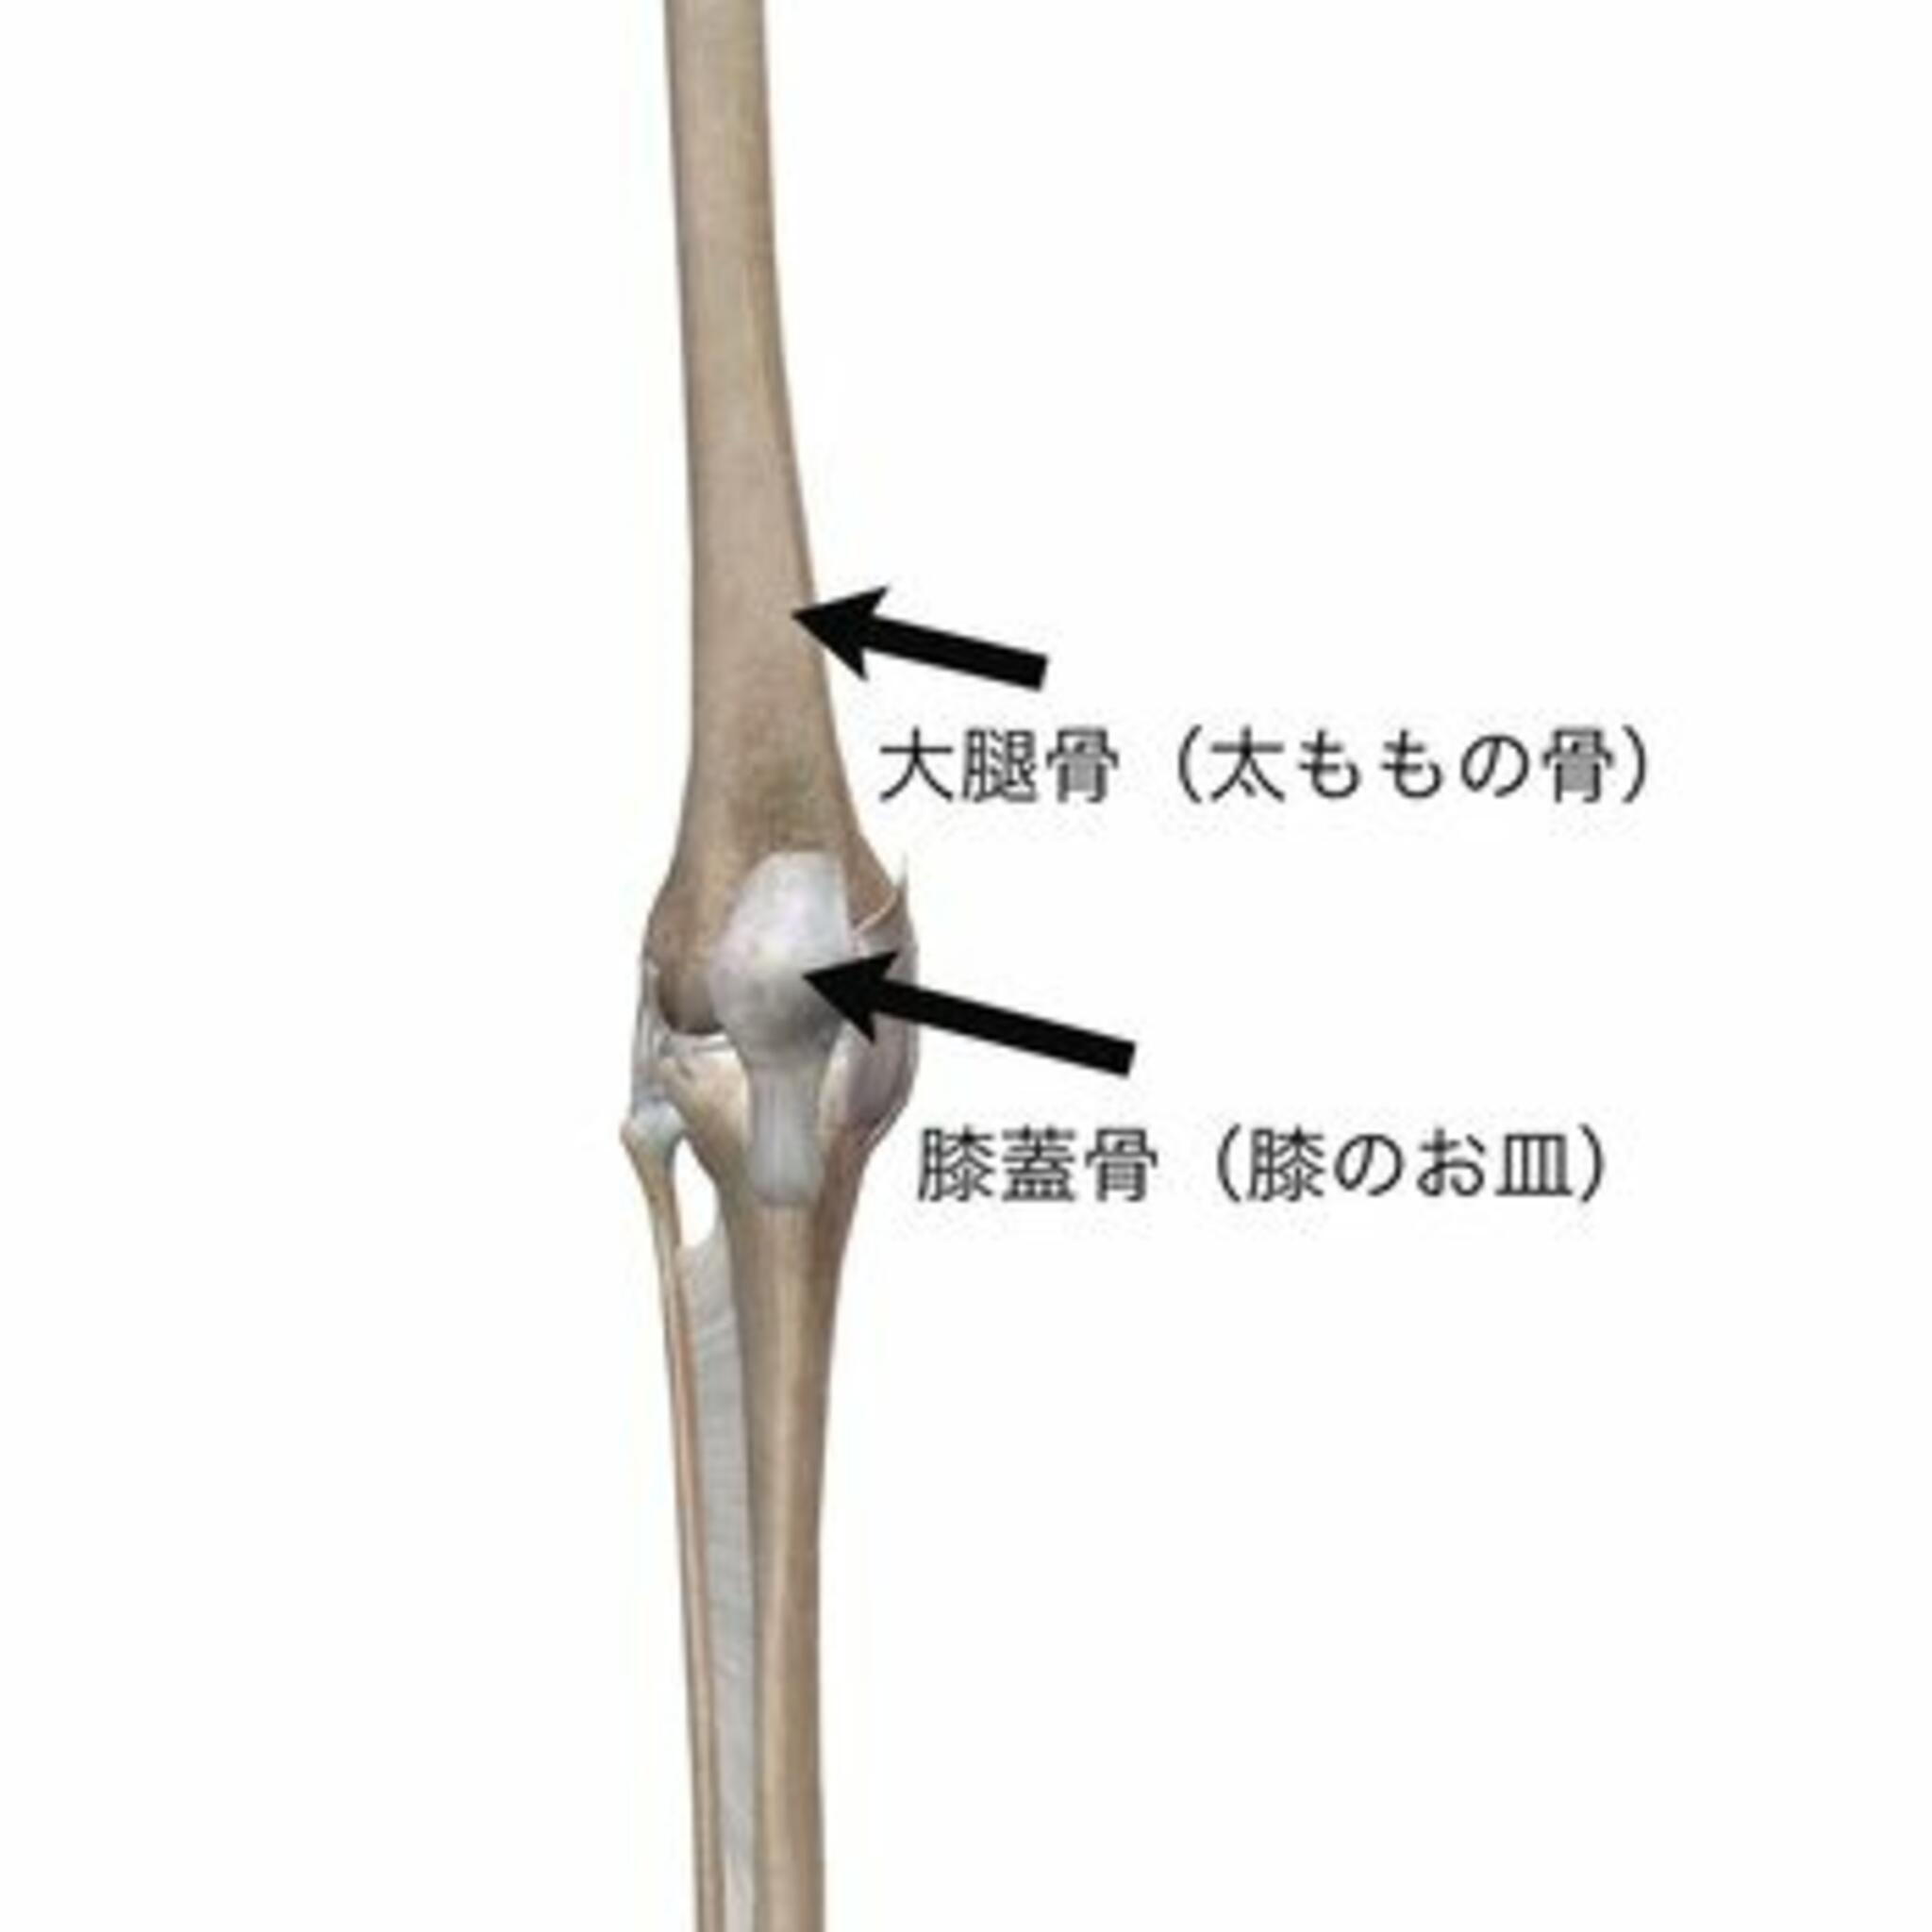 イーライフ鍼灸接骨院からのお知らせ(膝蓋大腿関節障害（しつがいだいたいかんせつ）について　vol1)に関する写真